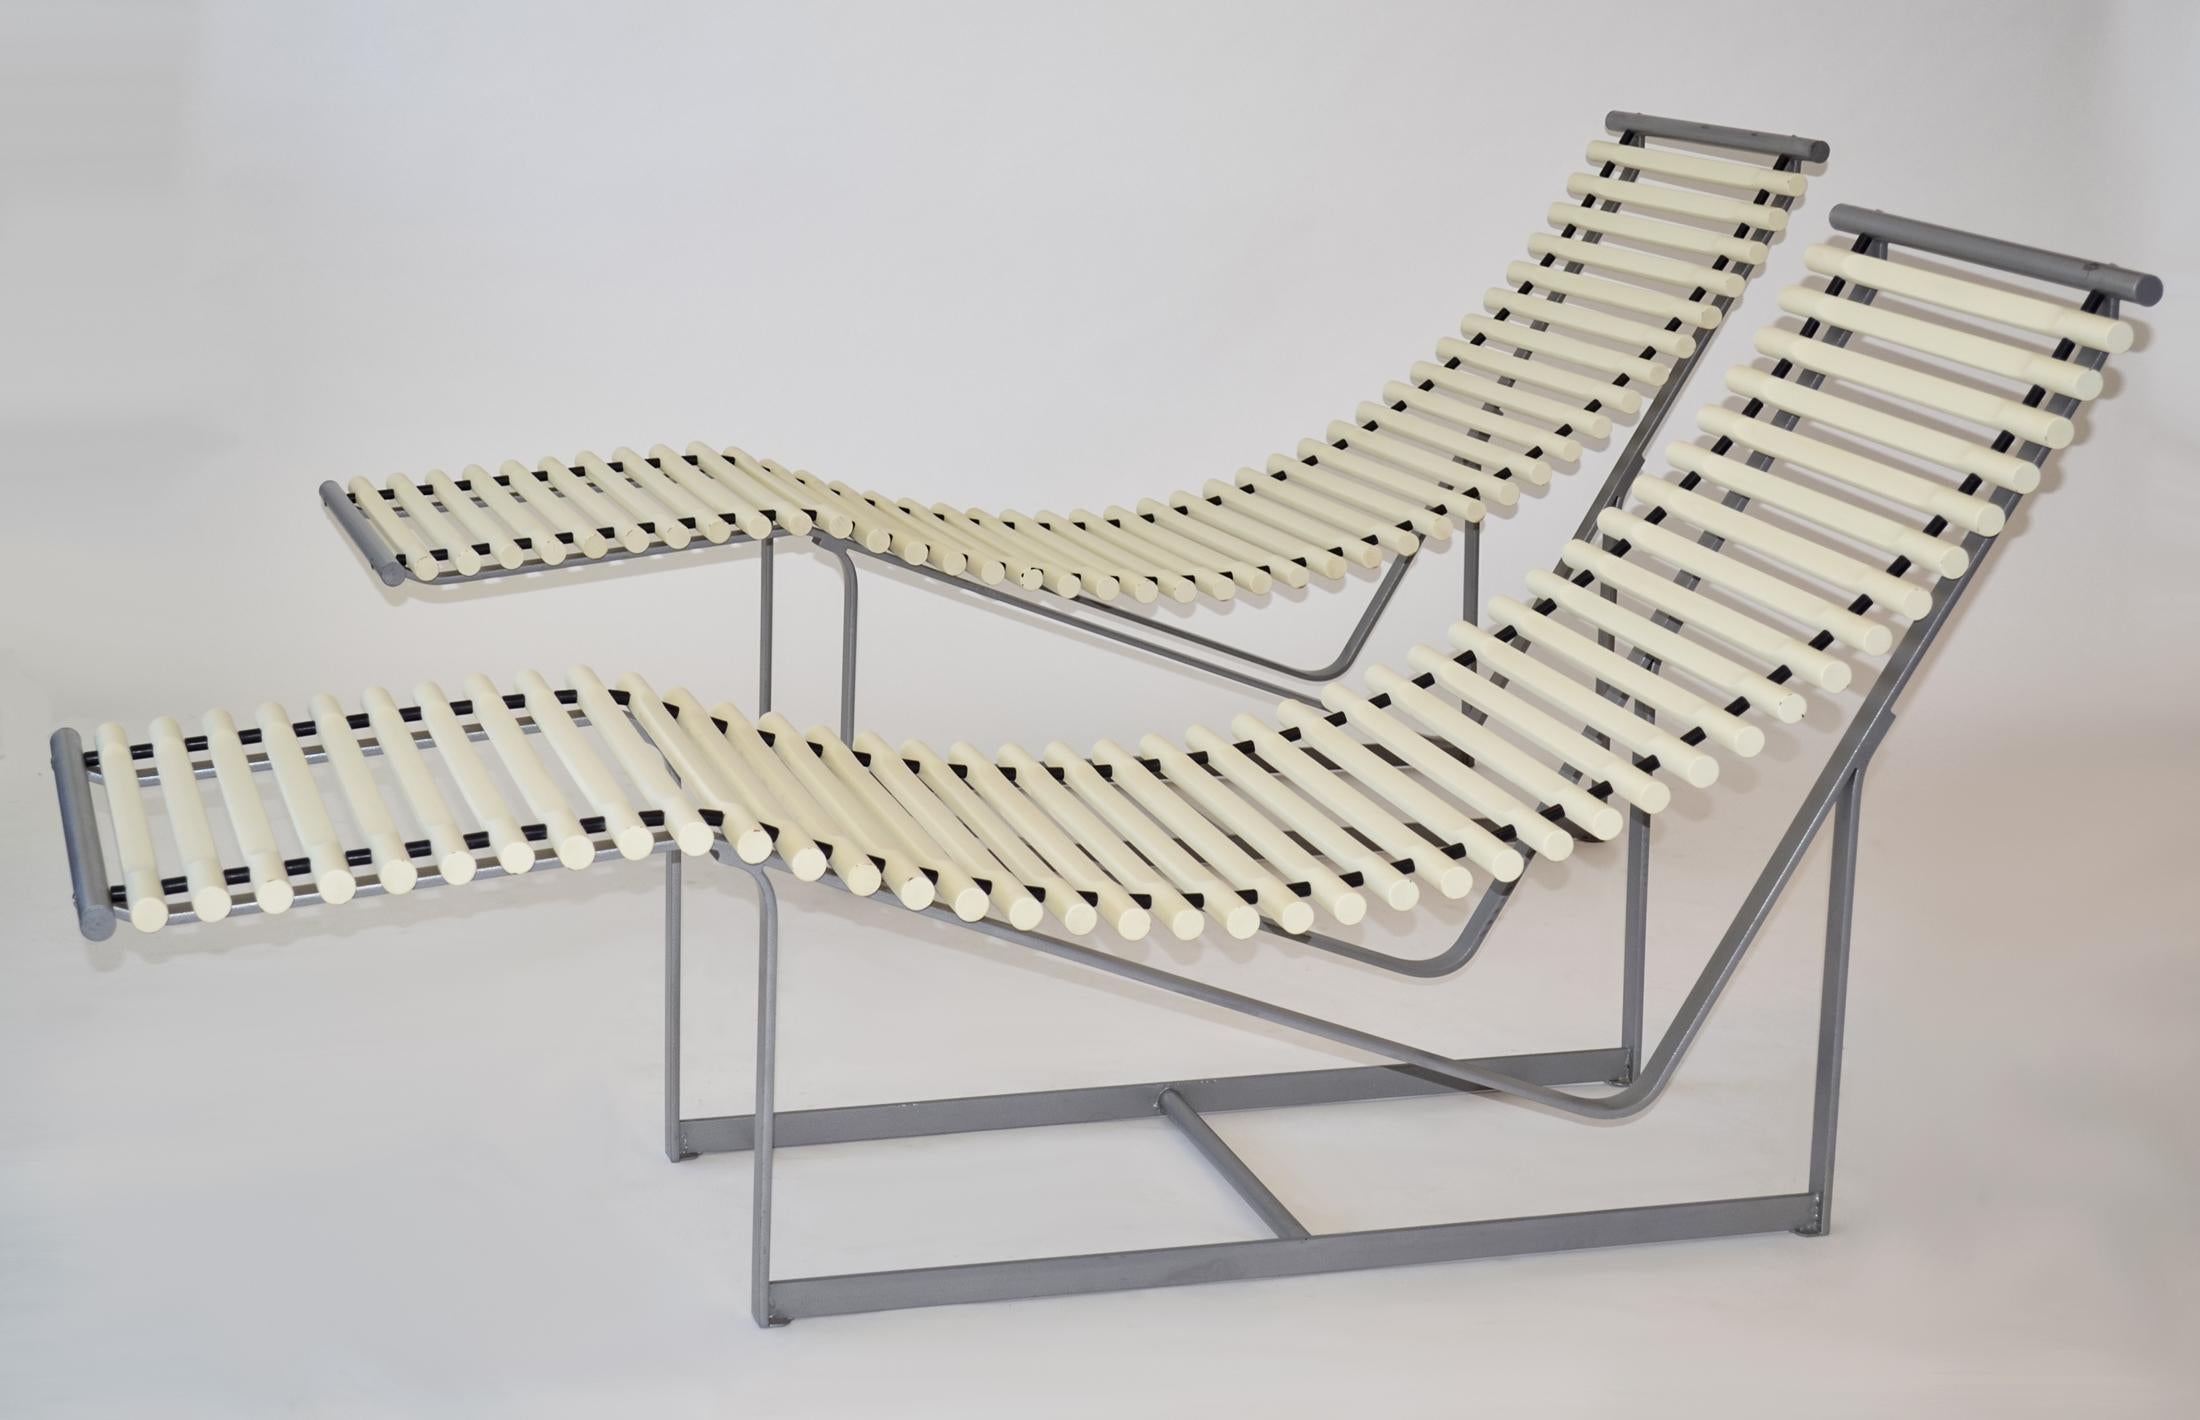 Paire de chaises longues ou fauteuils à dossier en fuseau Peter Strassl, Allemagne, 1978

Conçue par Peter Strassl en Allemagne en 1978, cette paire de chaises longues présente une forme sculpturale saisissante - les épines en bois de hêtre massif